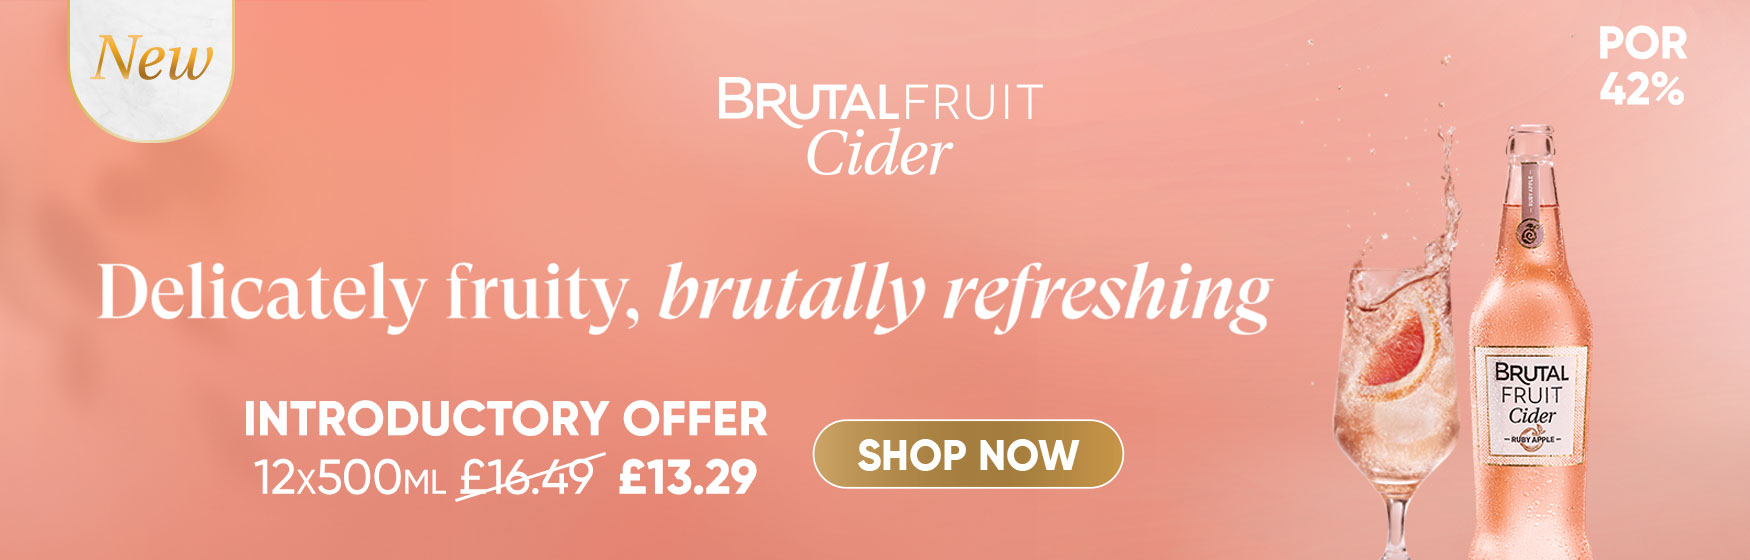 Brutal Fruit Cider - Delicately fruity, brutally r